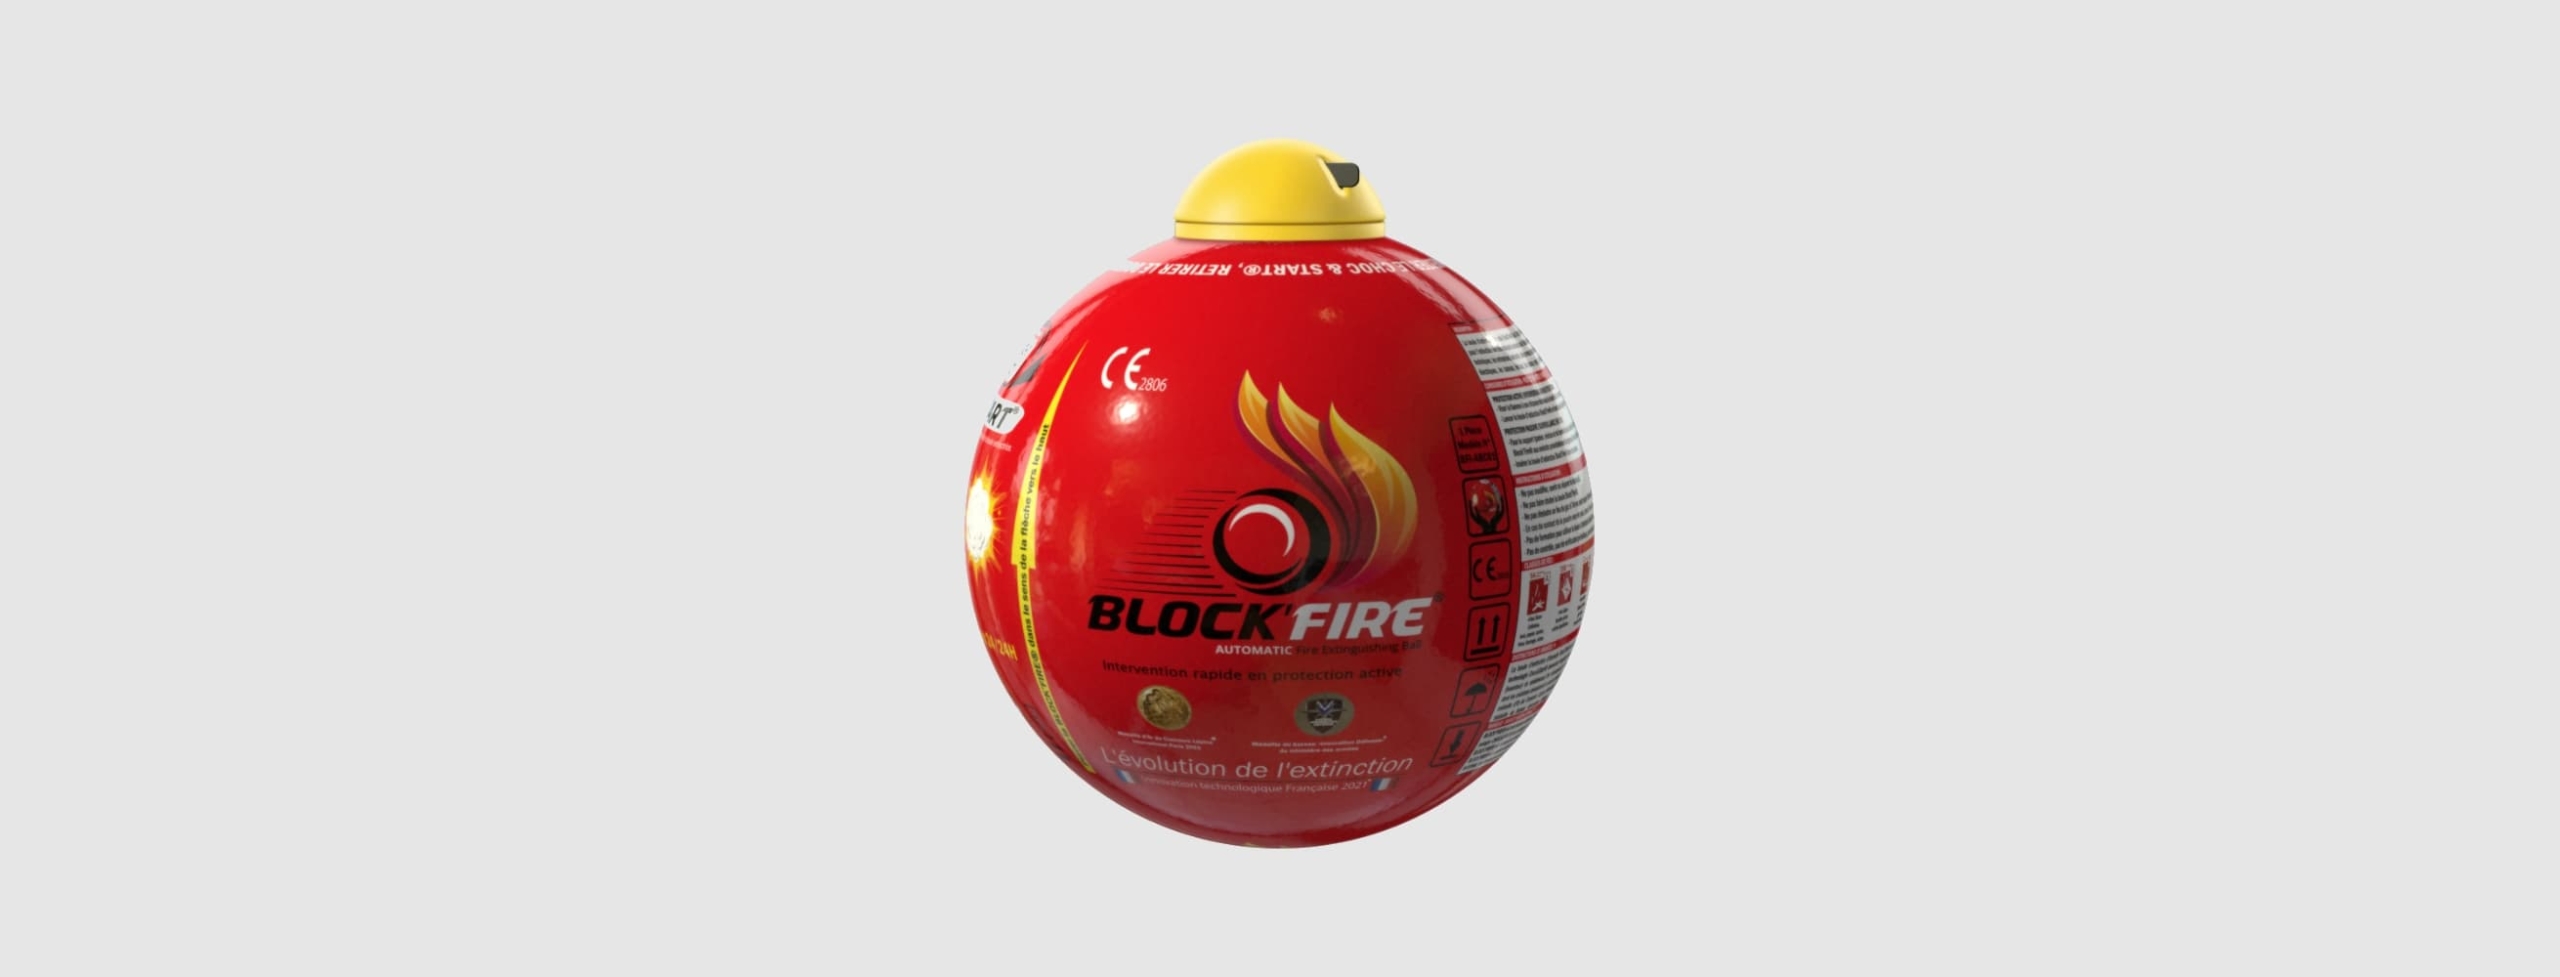 Comment installer la boule extinctrice Block’Fire® dans son foyer ?